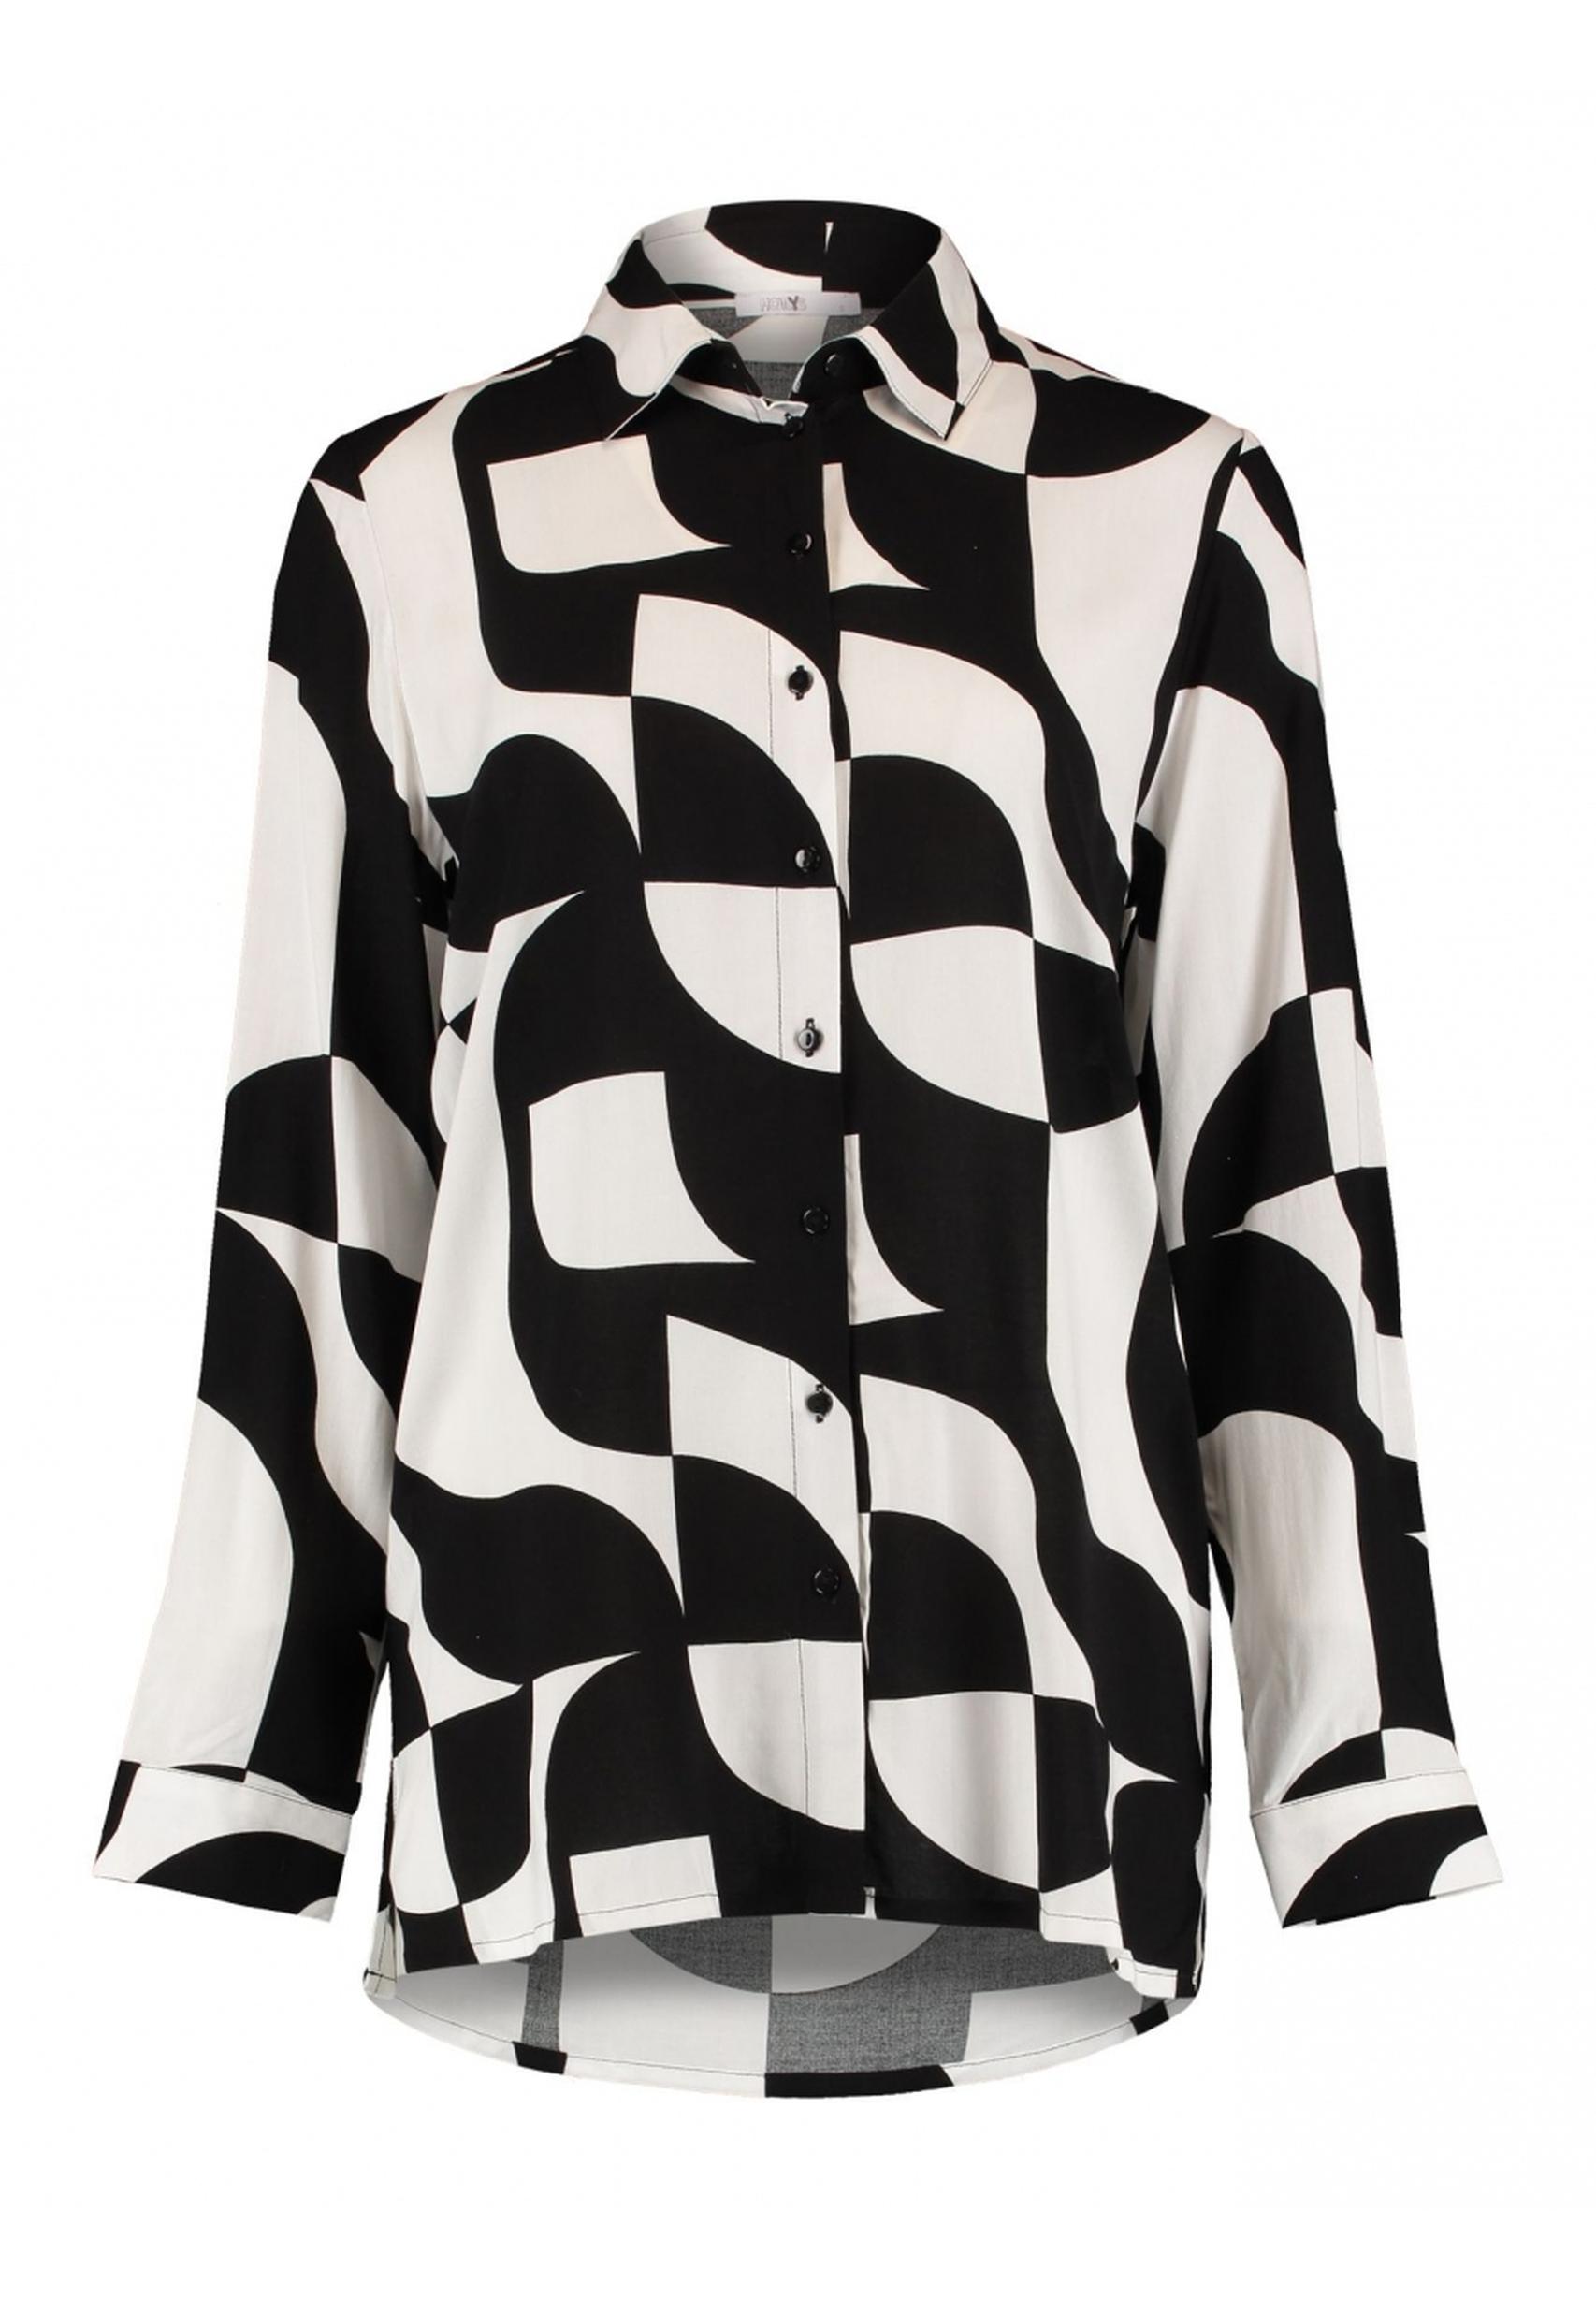 Trendige Bluse Ni44na aus der Kollektion von HAILYS in schwarz-weiß -  BOX-2302029